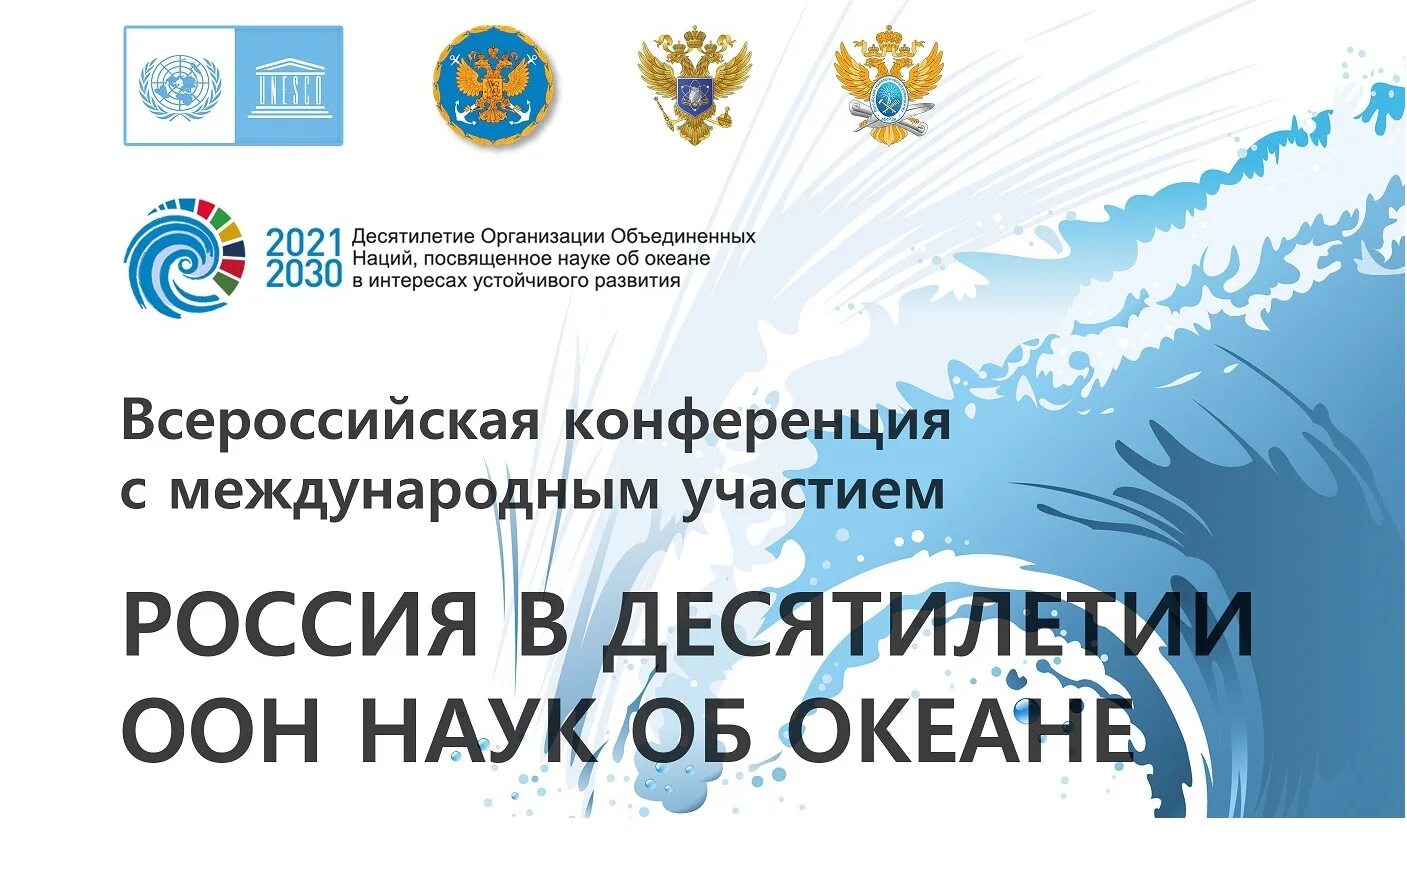 Десятилетие наук об океане. 10 Летие науки. 10 Летие науки и технологии в России логотип.